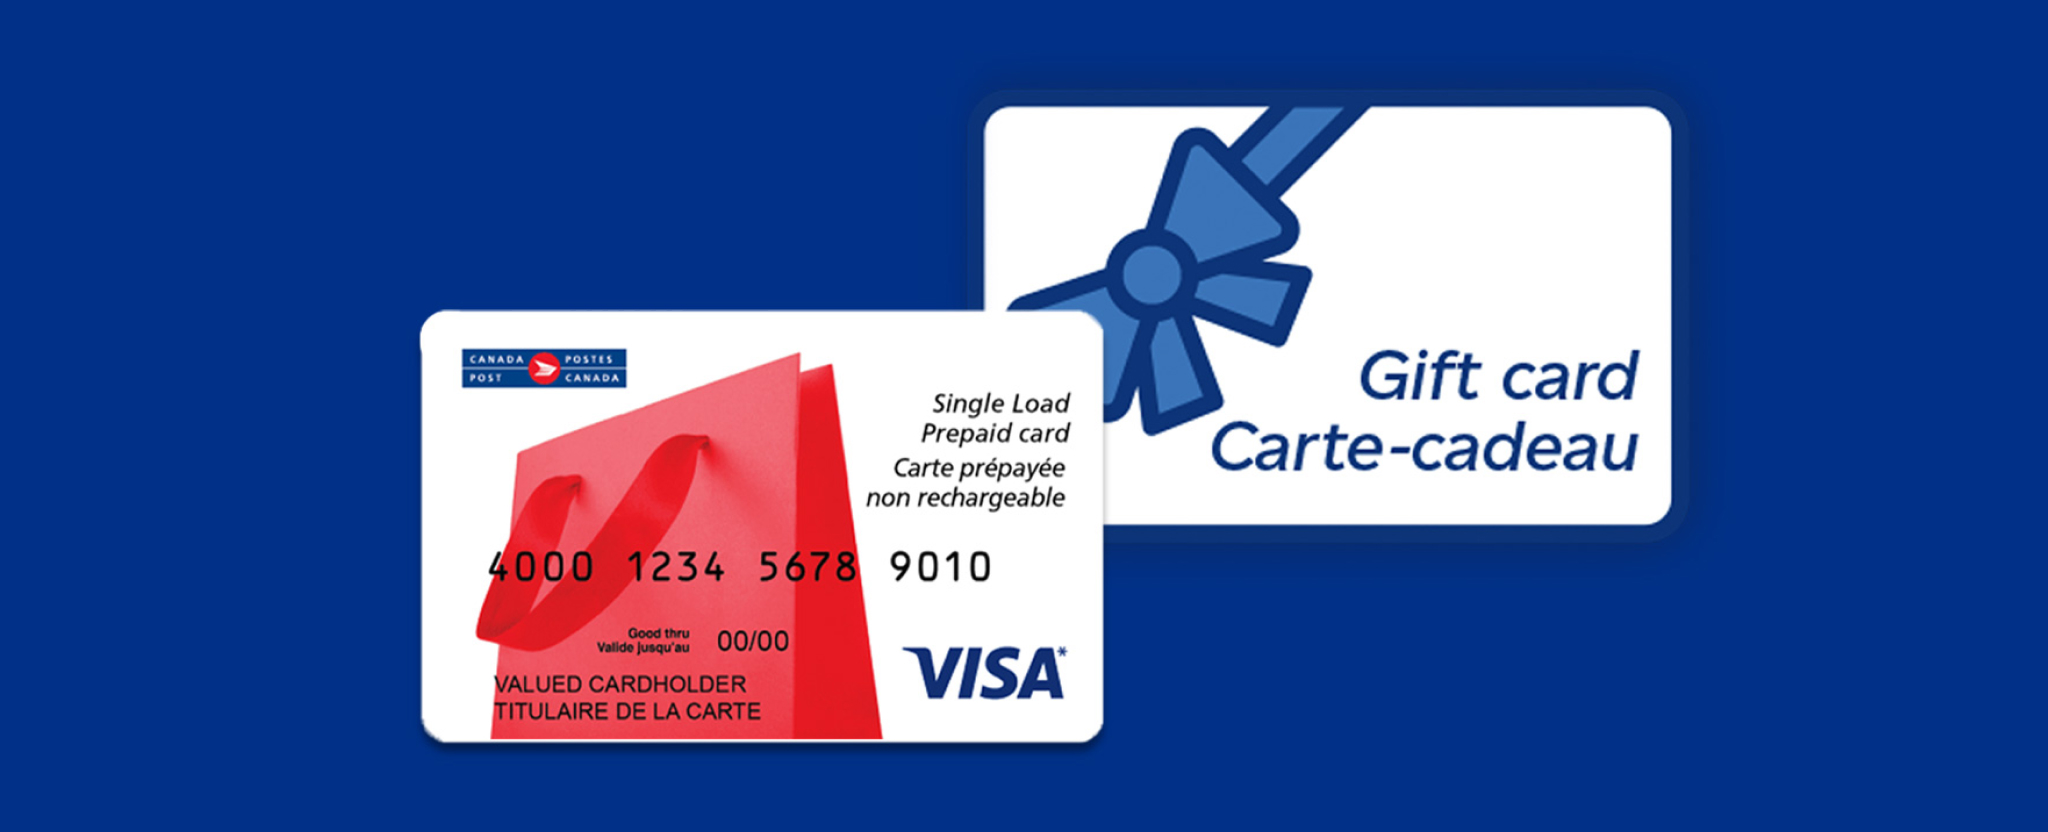 Une carte-cadeau avec une illustration de nœud bleu et une carte Visa prépayée non rechargeable de Postes Canada